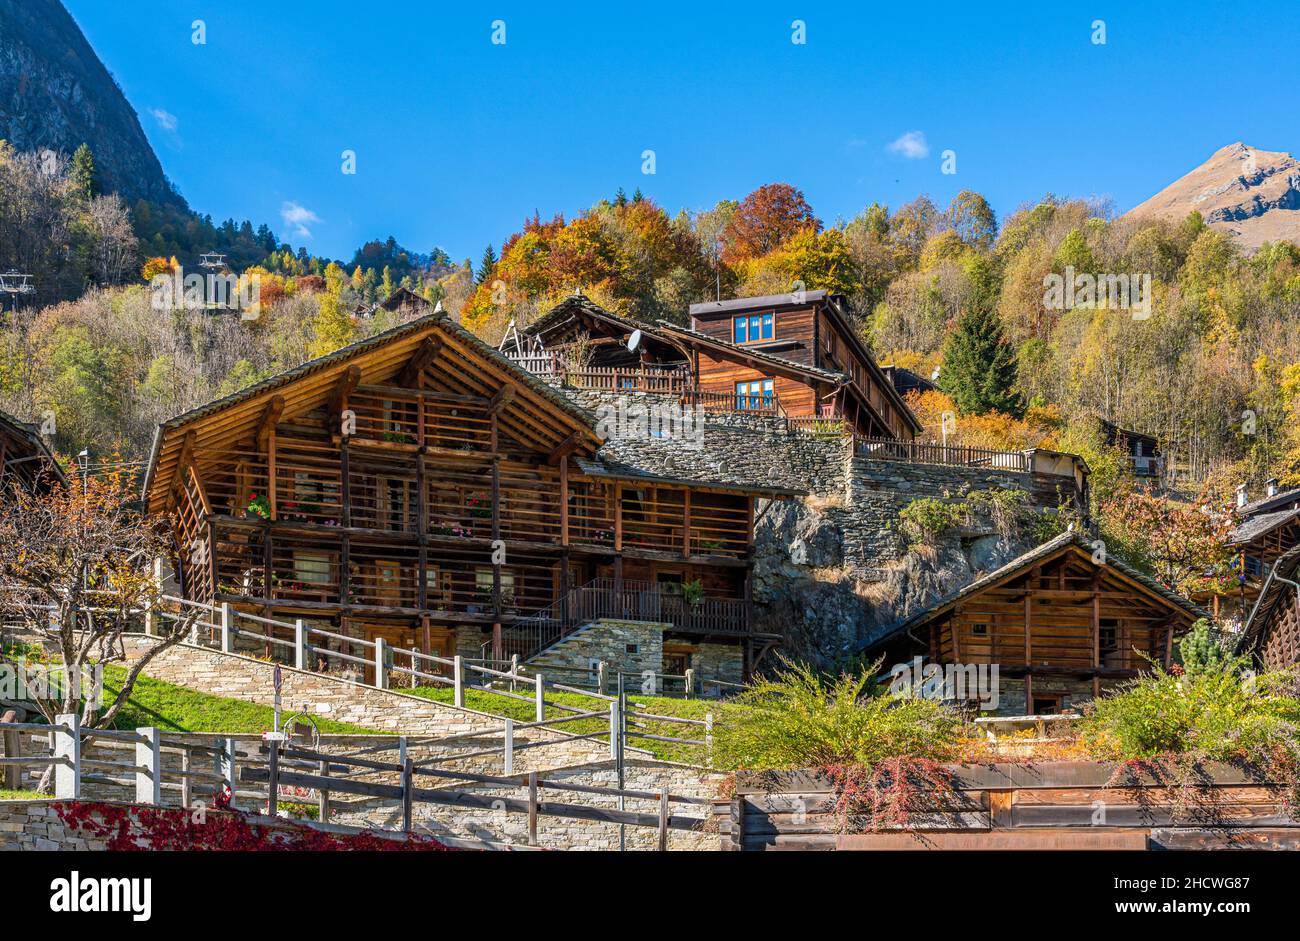 Das schöne Dorf Alagna Valsesia, während der Herbstsaison, in Valsesia (Sesia Valley). Provinz Vercelli, Piemont, Italien. Stockfoto